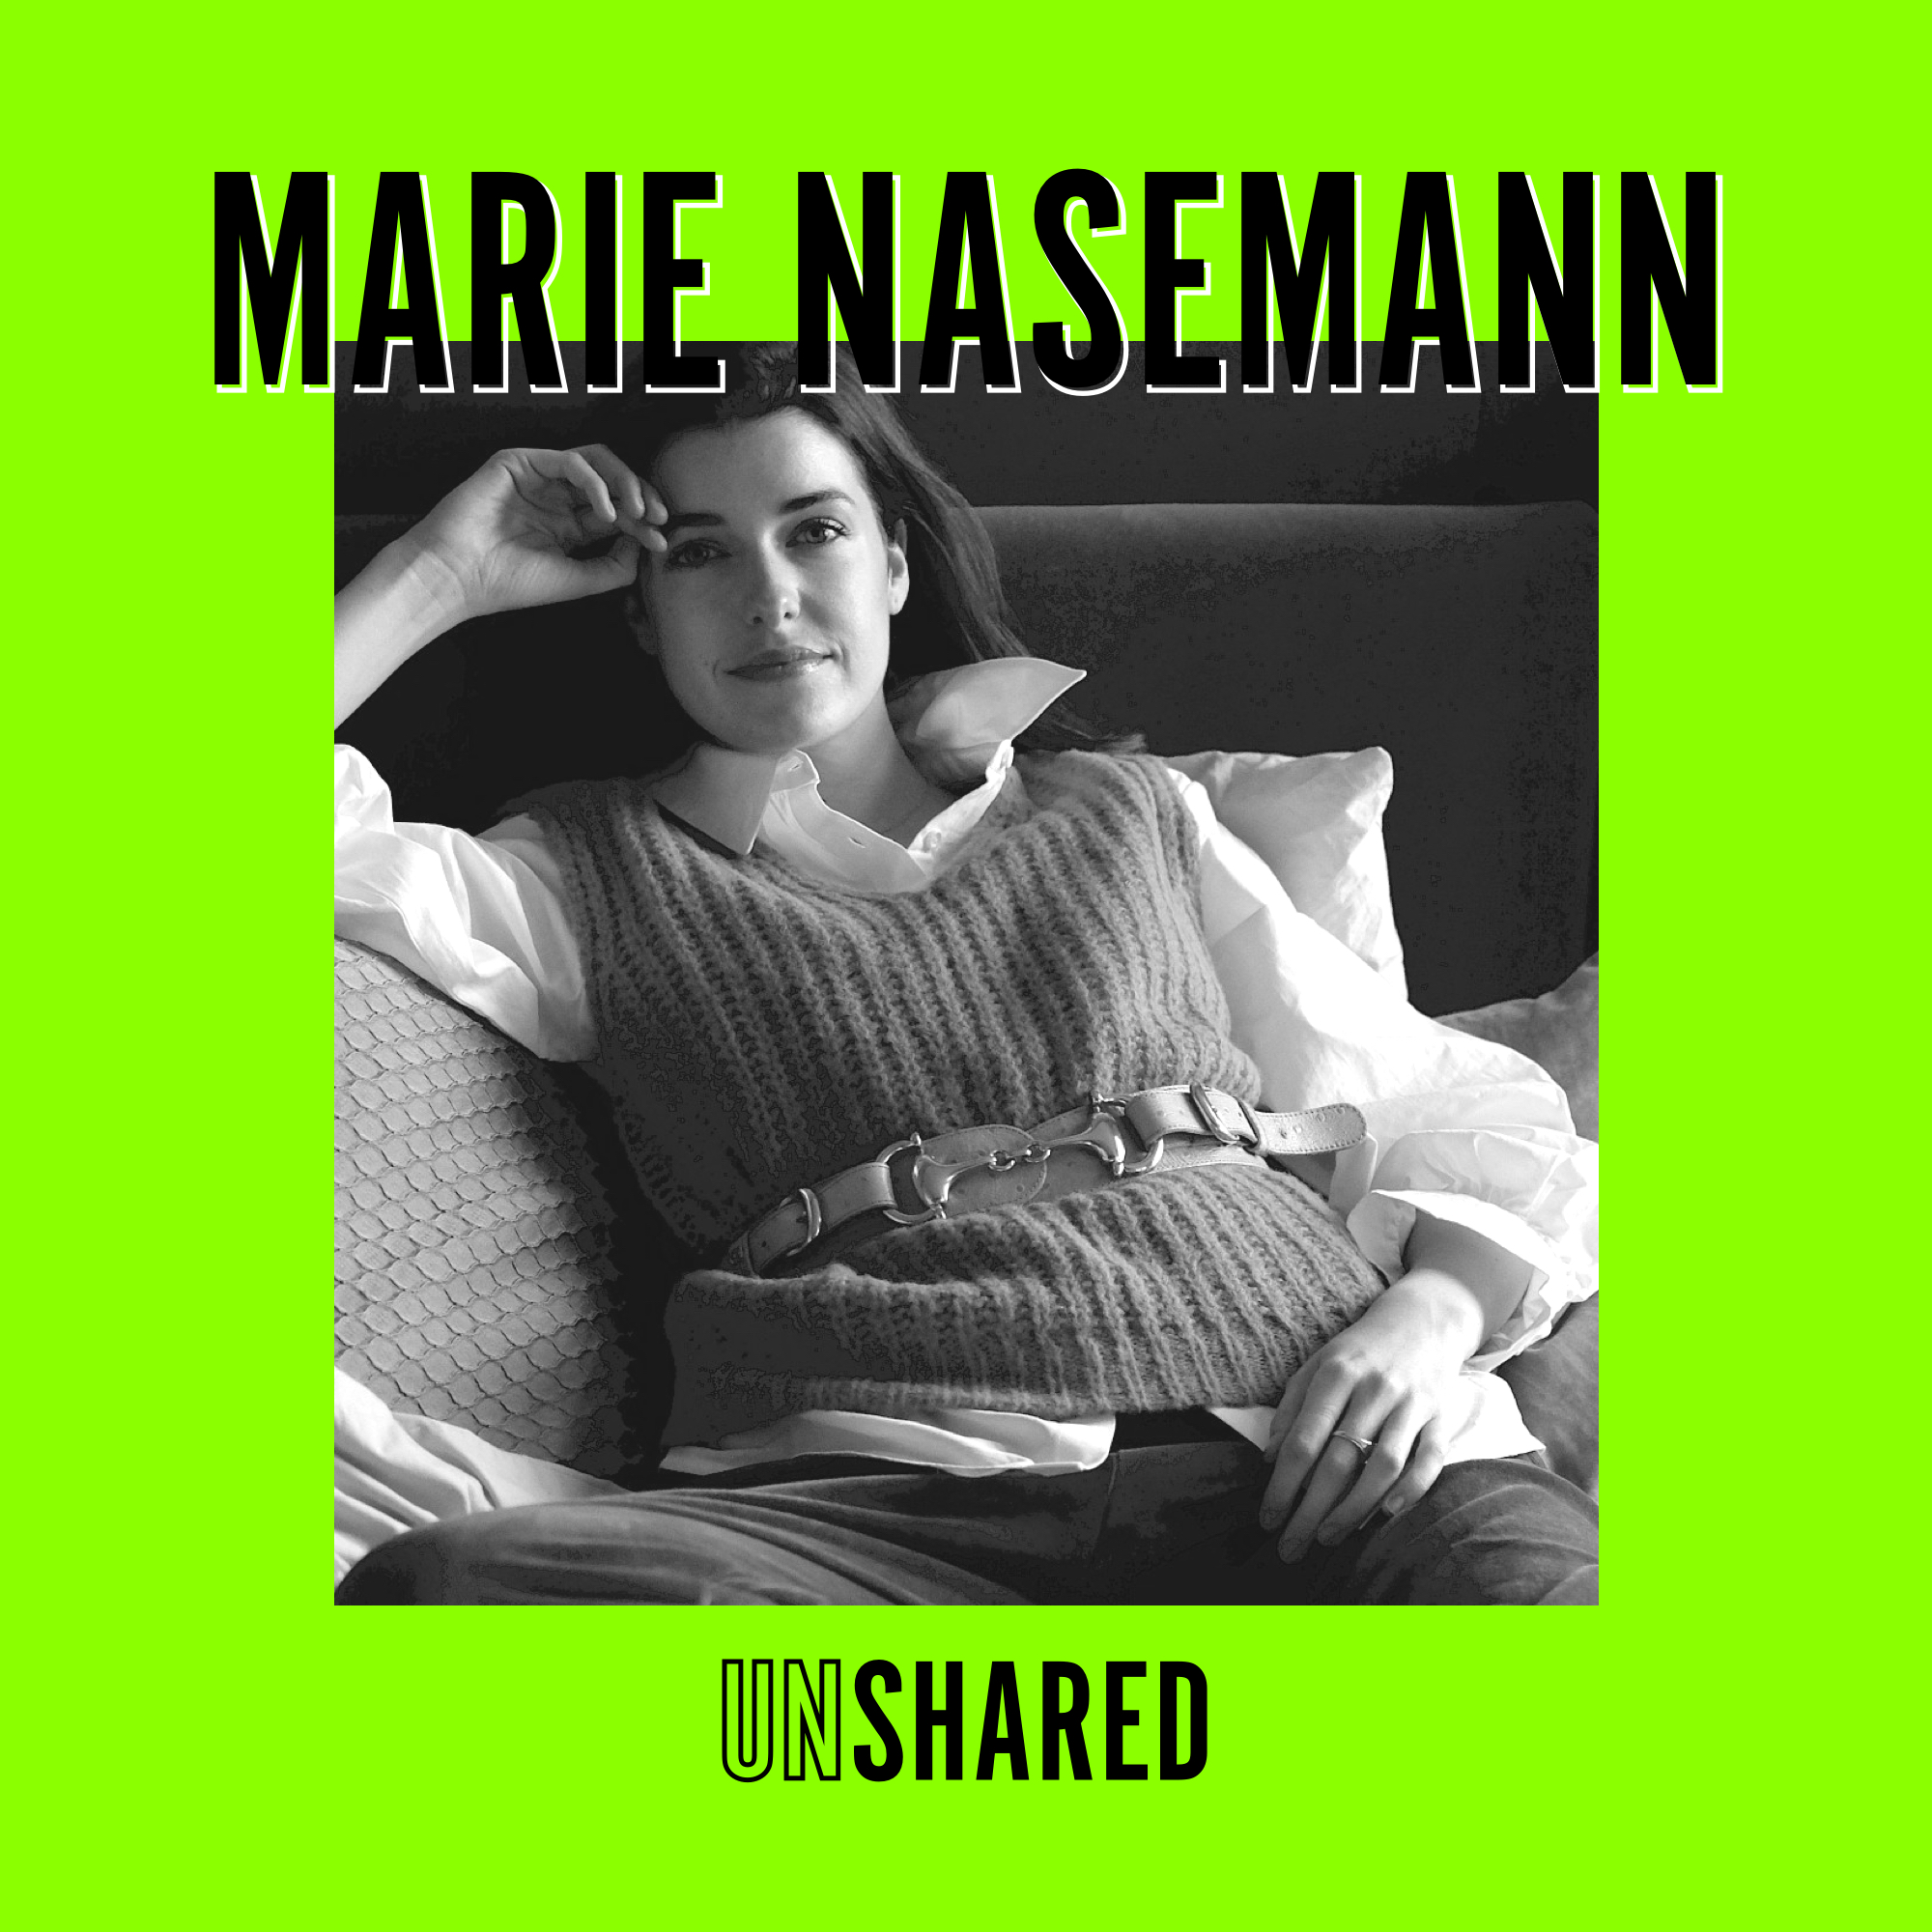 Marie Nasemann - Über ihre Work-Mama Balance, Nachhaltigkeit und ihre Fehlgeburt